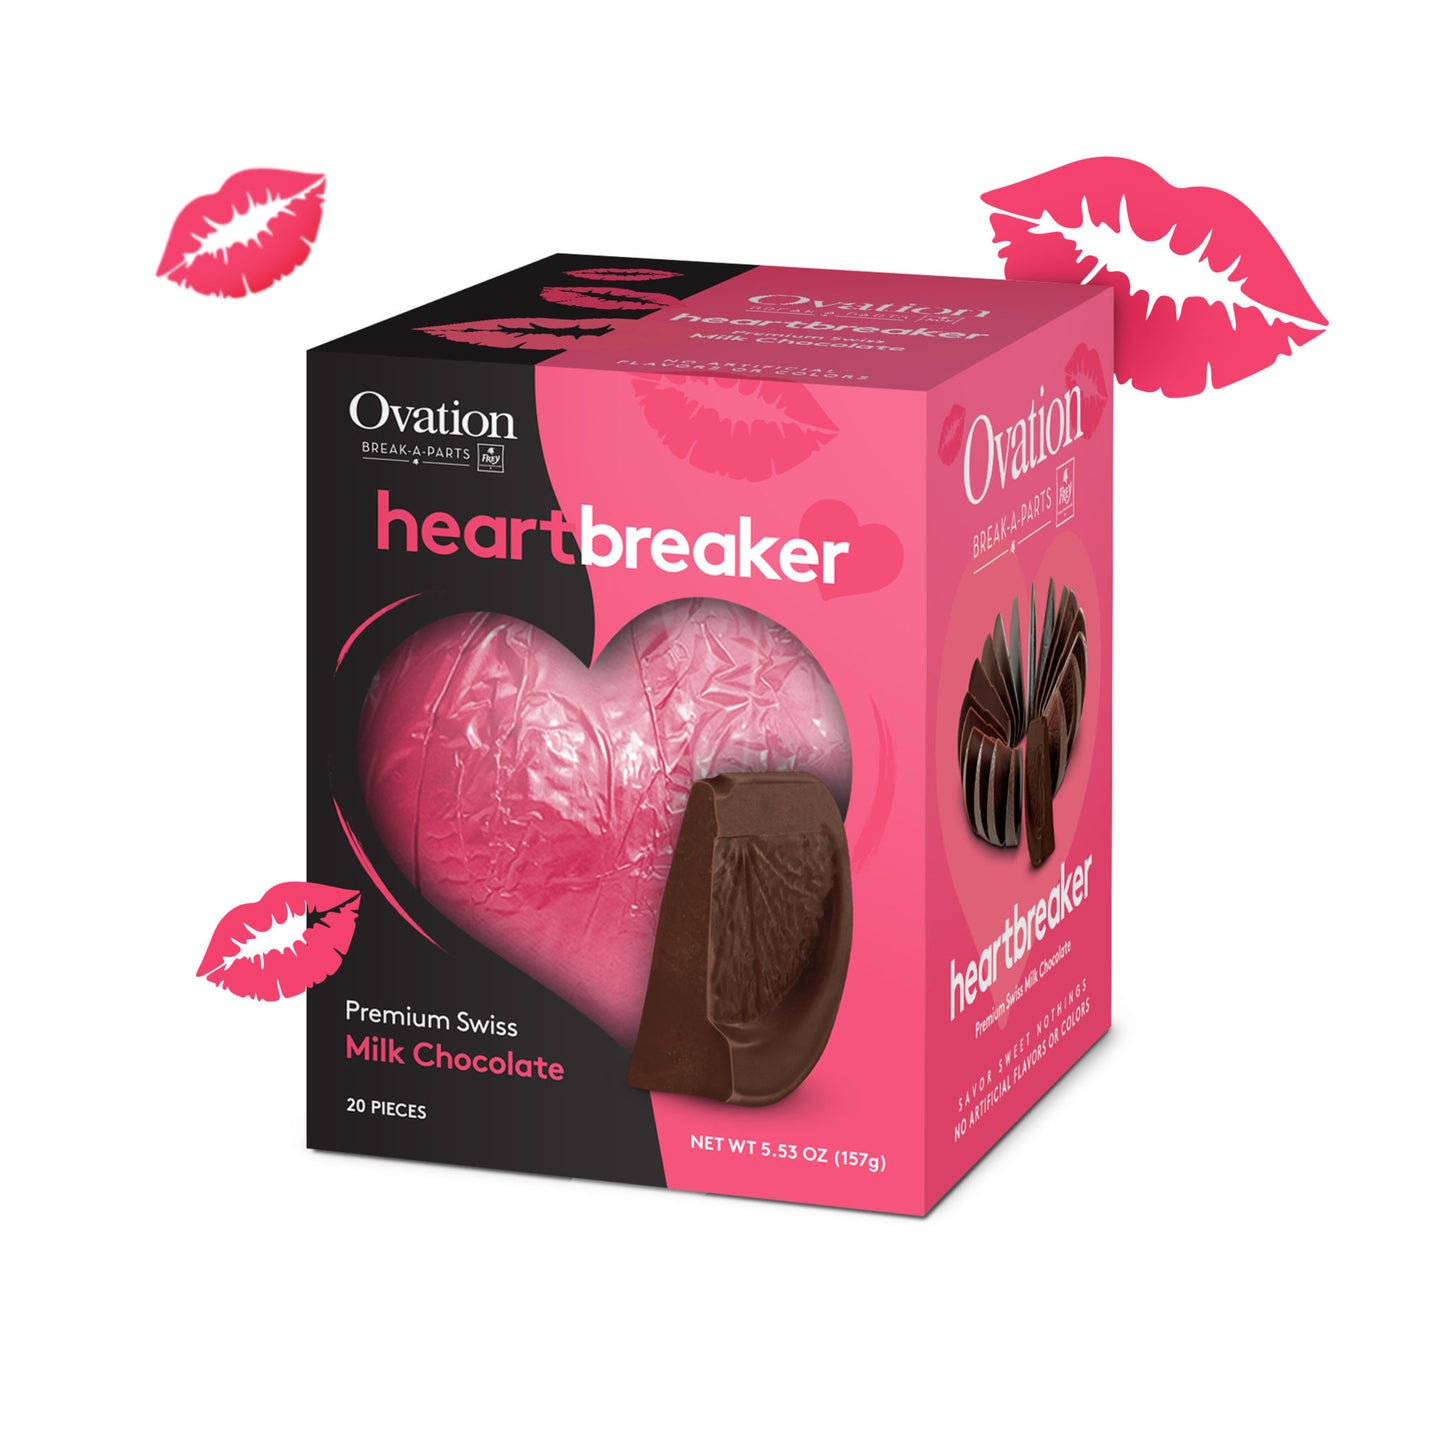 Ovation Heart Breaker